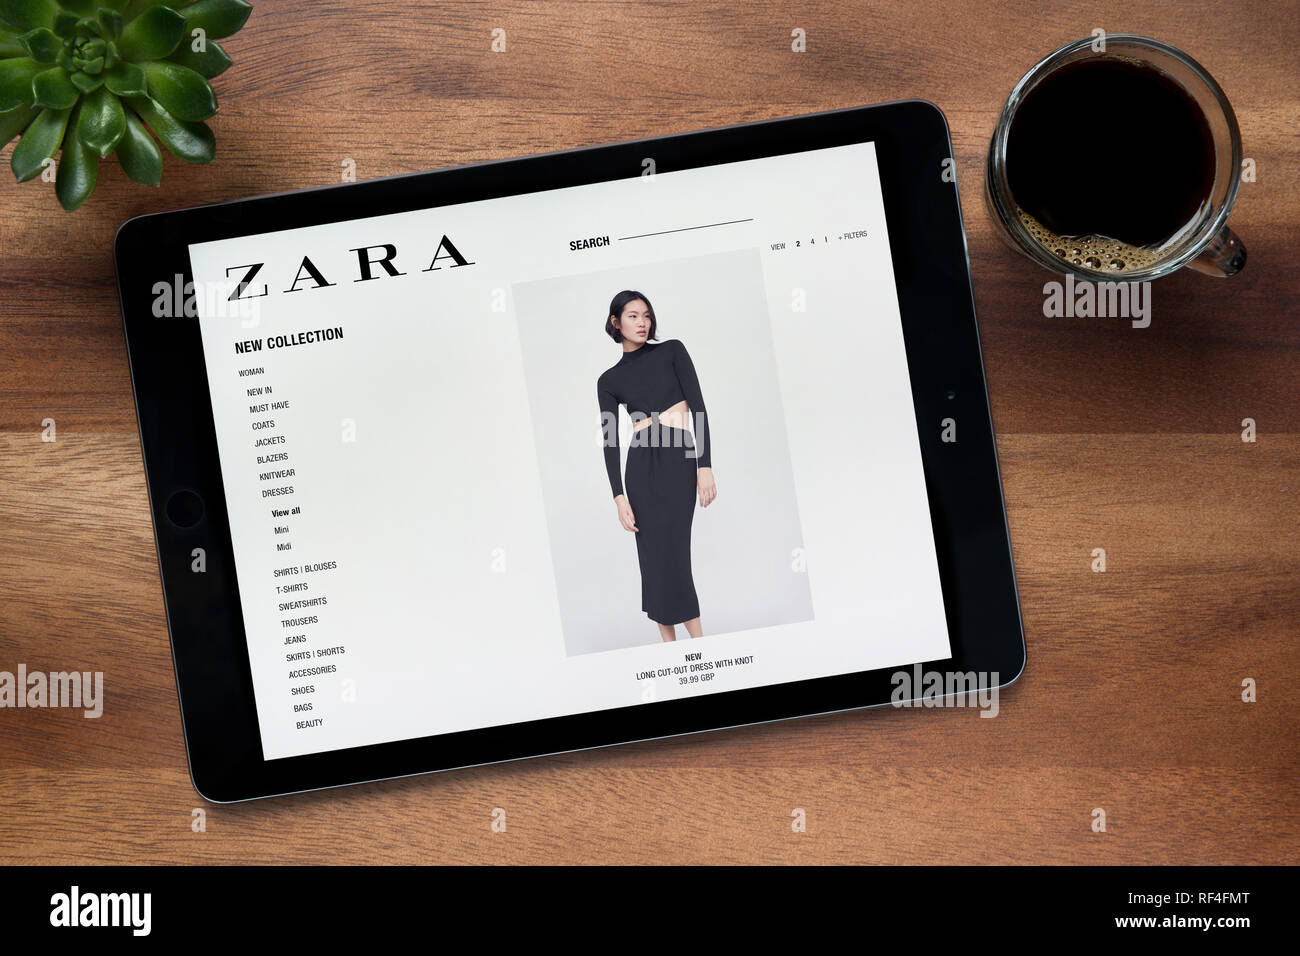 Le site de Zara est vu sur un iPad tablet, sur une table en bois avec une  machine à expresso et d'une plante (usage éditorial uniquement Photo Stock  - Alamy